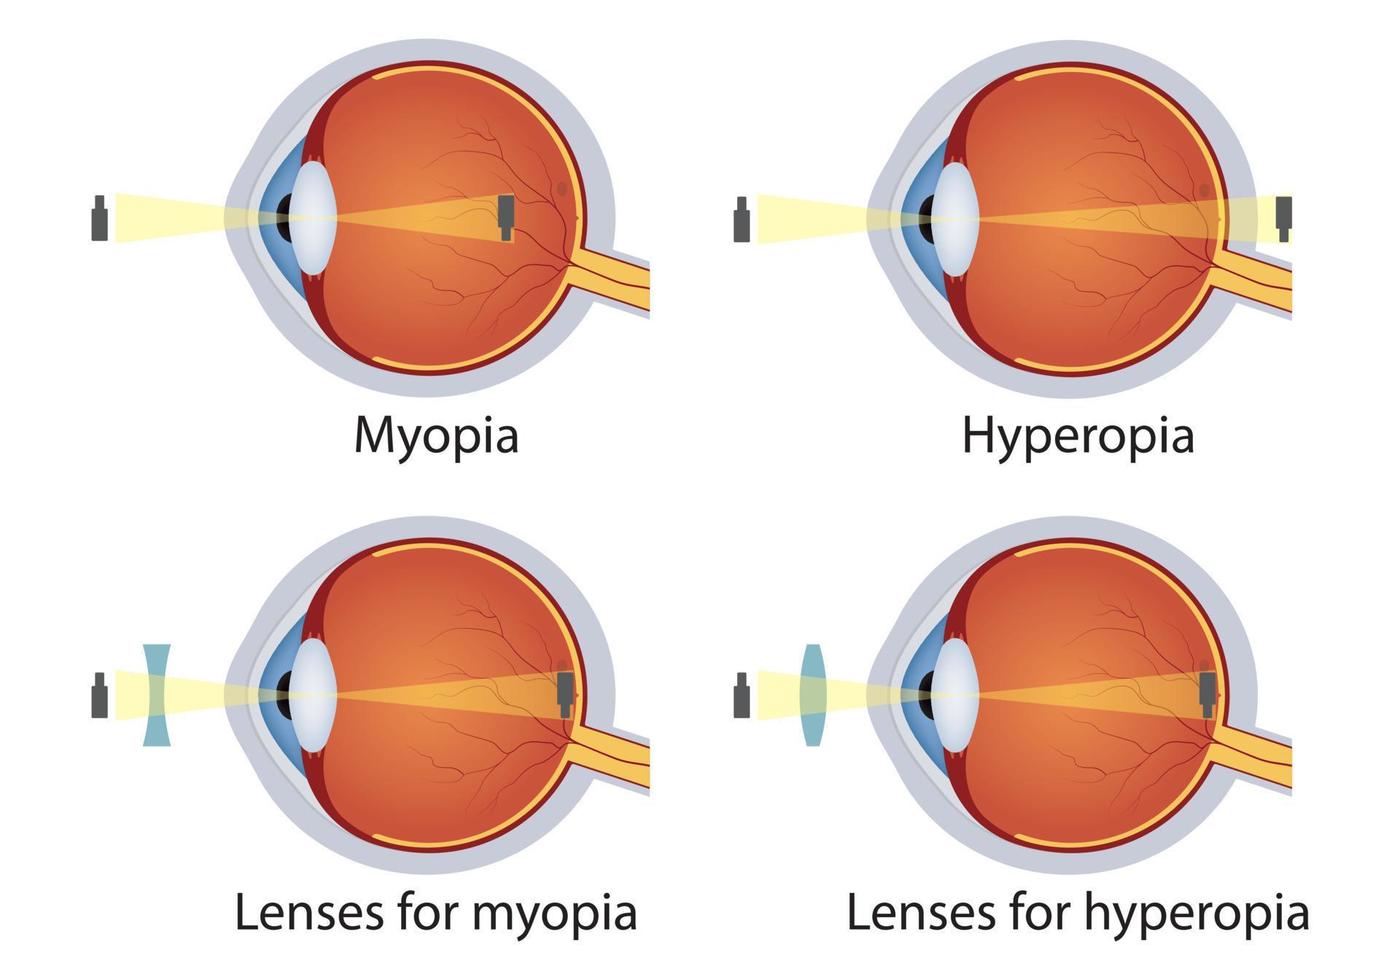 hipermetropia e miopia corrigidas por lentes. conceito de defeito nos olhos. correção de vários distúrbios da visão ocular por lentes. vetor